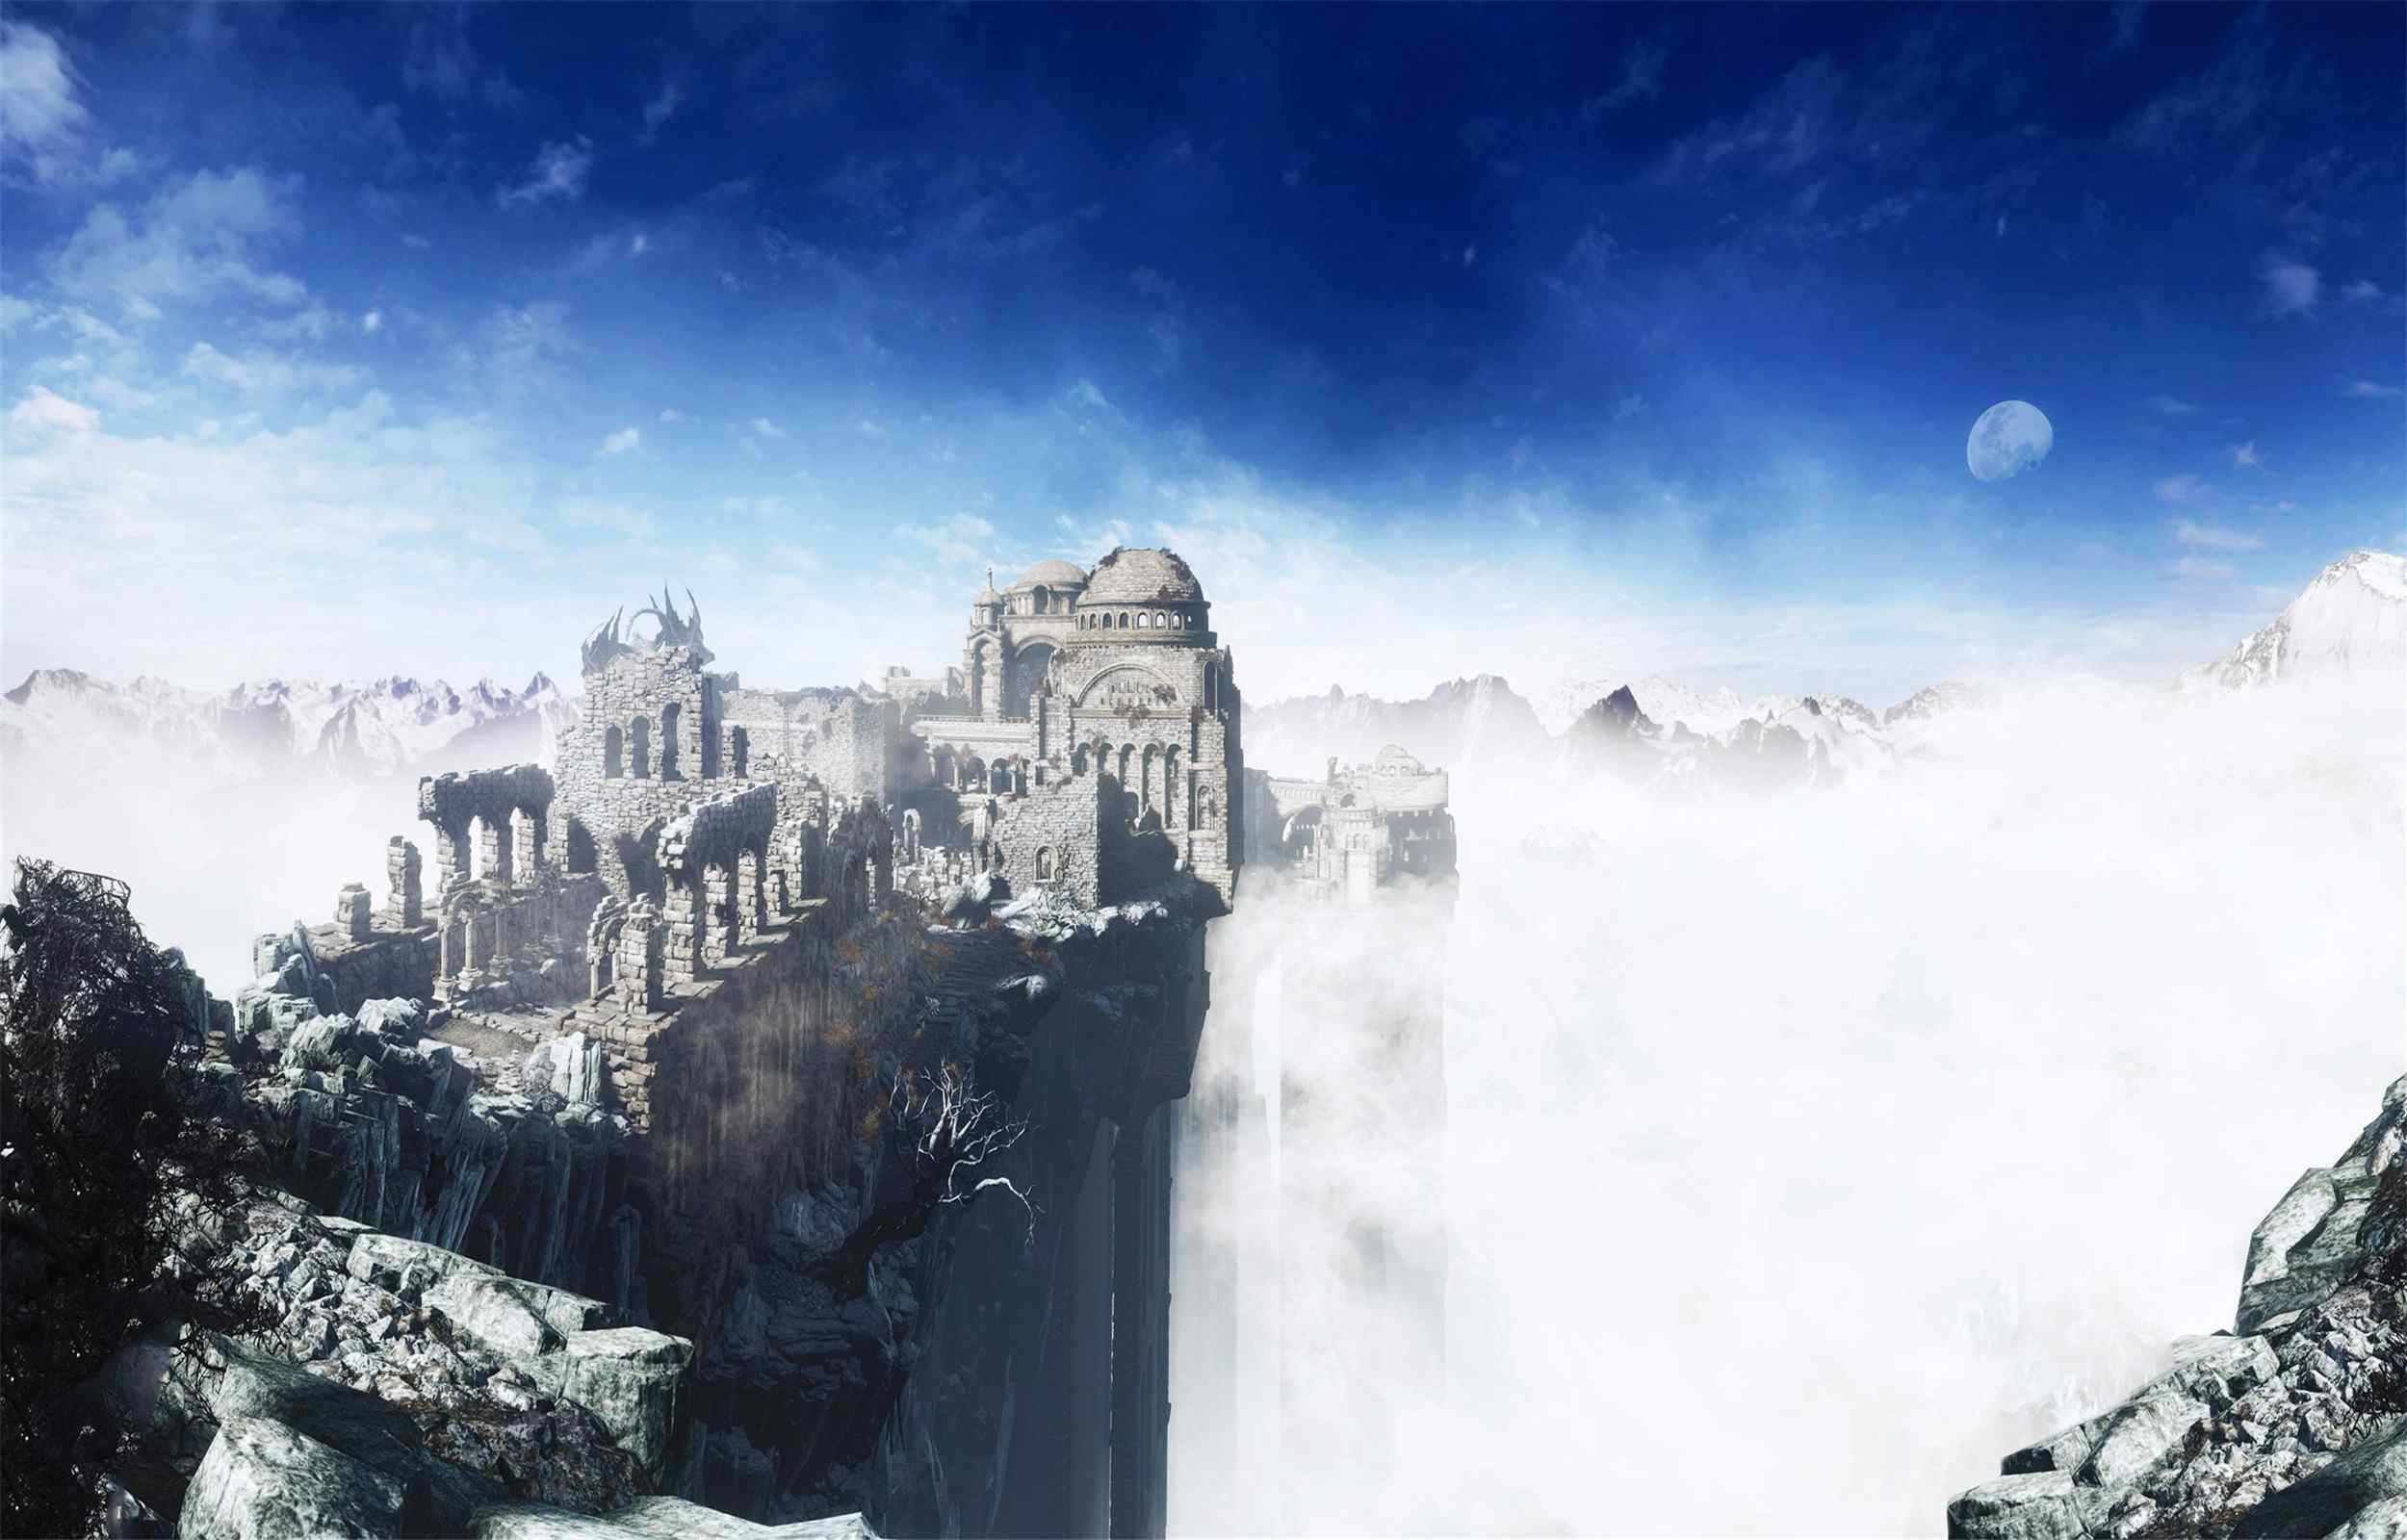 《黑暗之魂3》空中城堡游戏场景壁纸图片大全